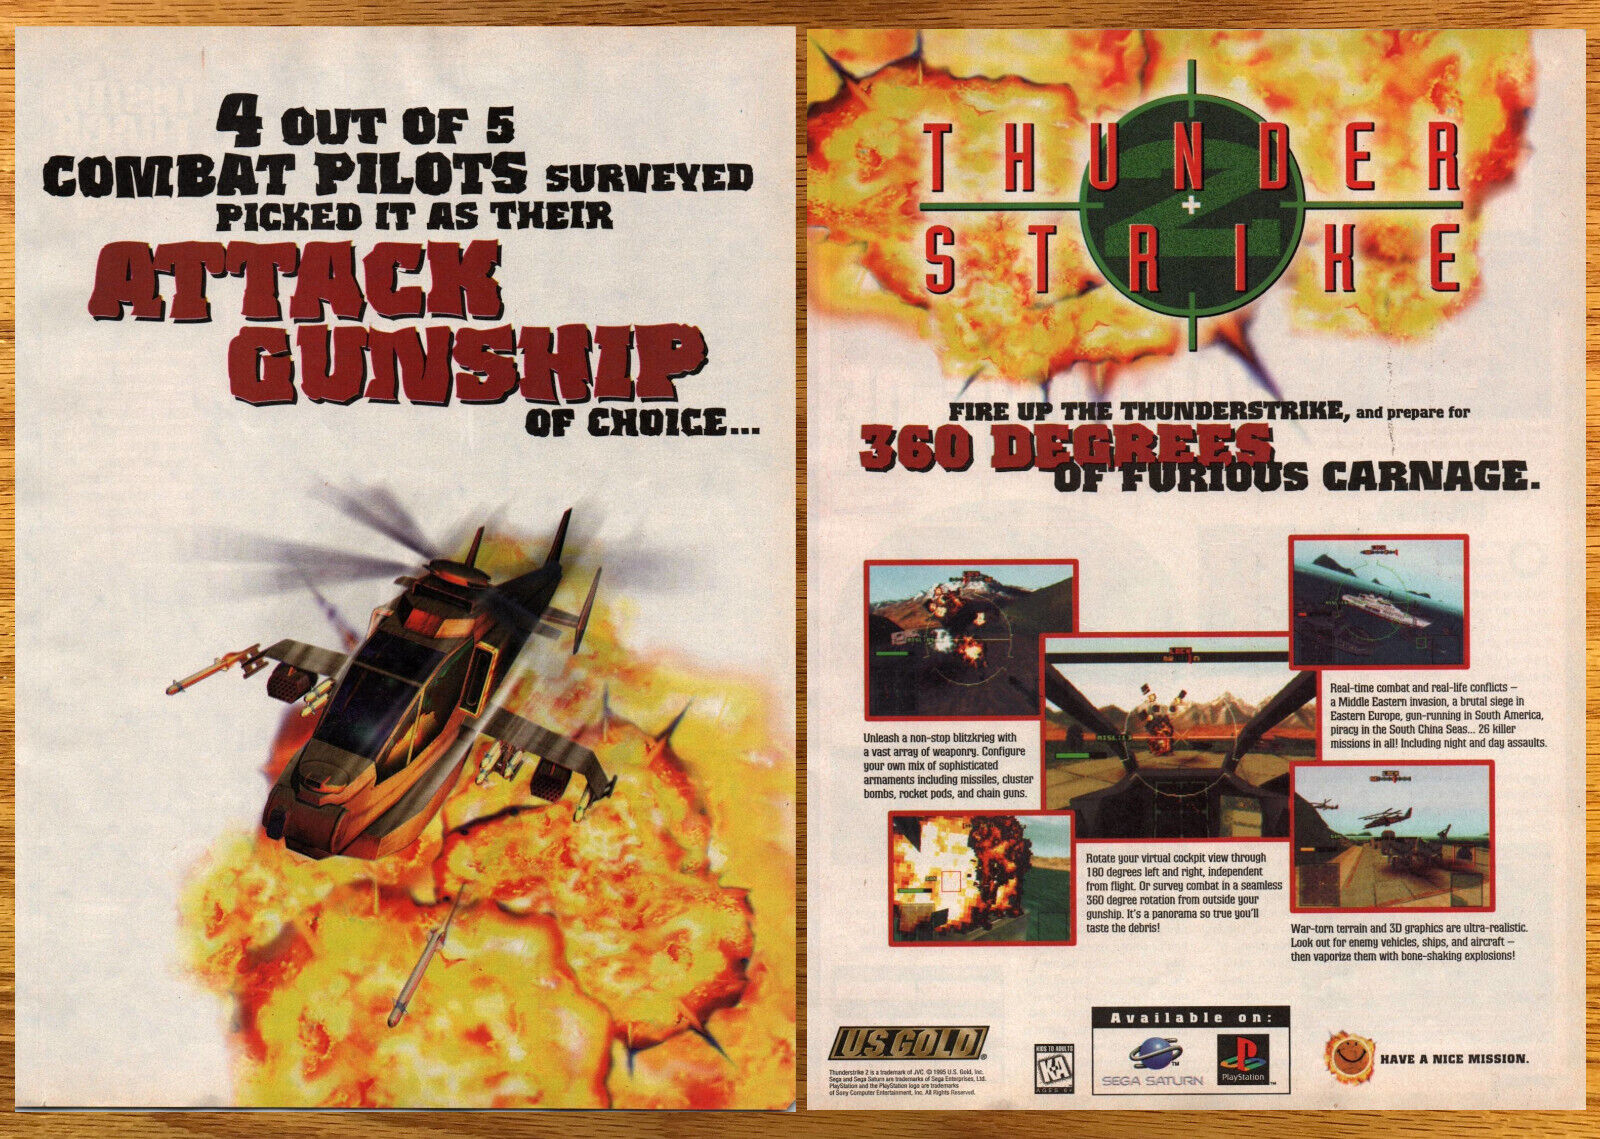 Thunder Strike II Atack Gunship - 2 Page Video Game Print Ad / Poster Art 1996